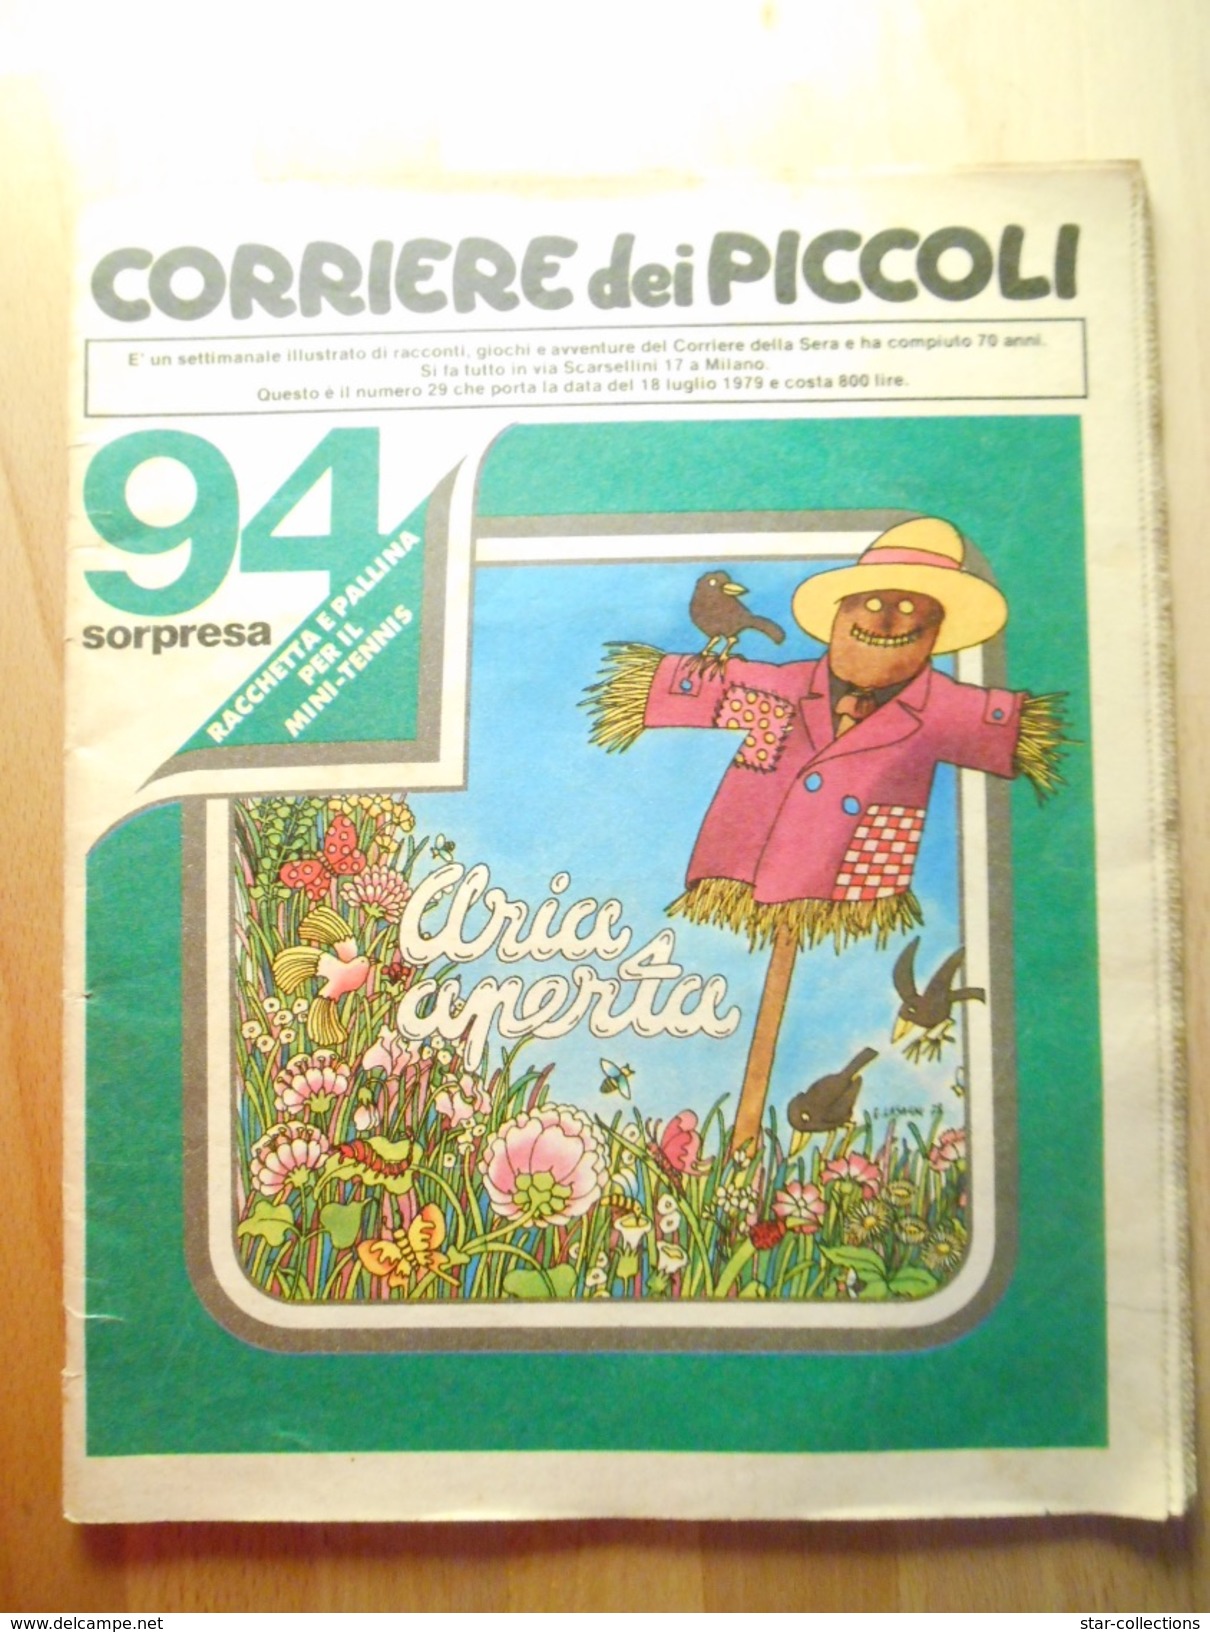 CORRIERE DEI PICCOLI N. 29 1979 - Corriere Dei Piccoli